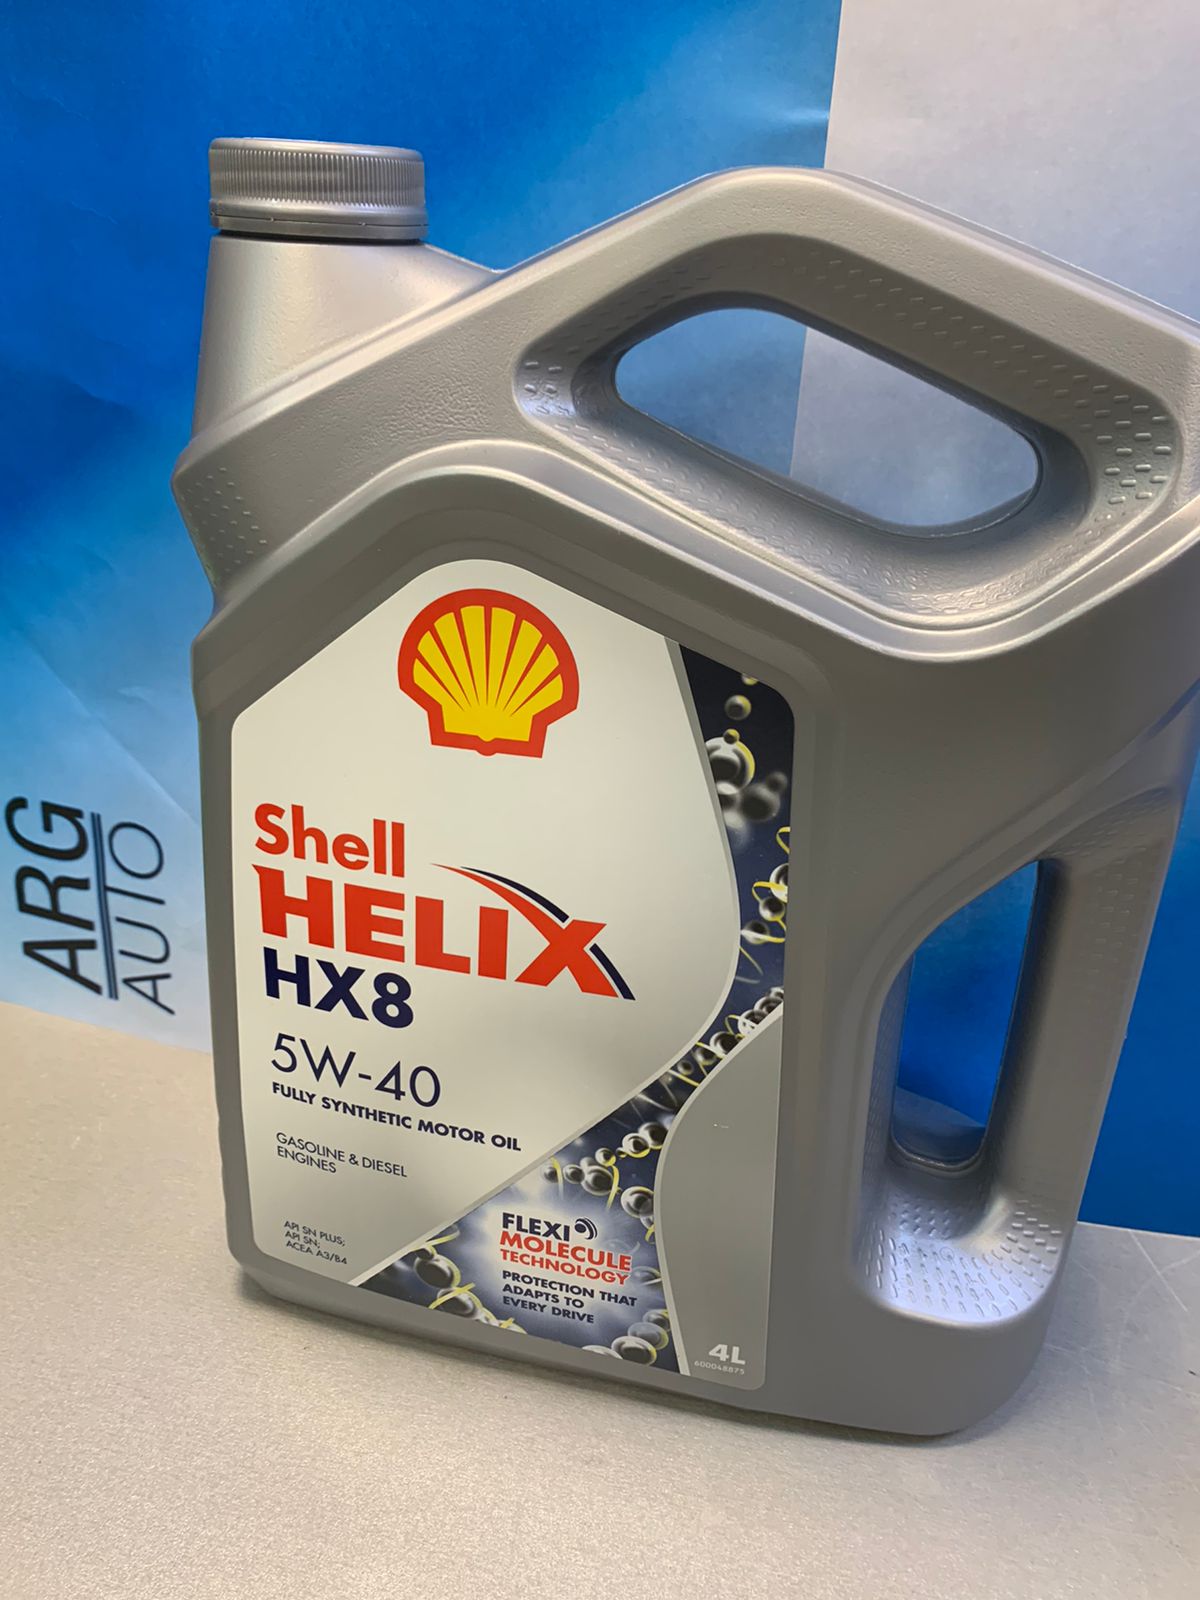 Shell Helix HX8 5w40 4L